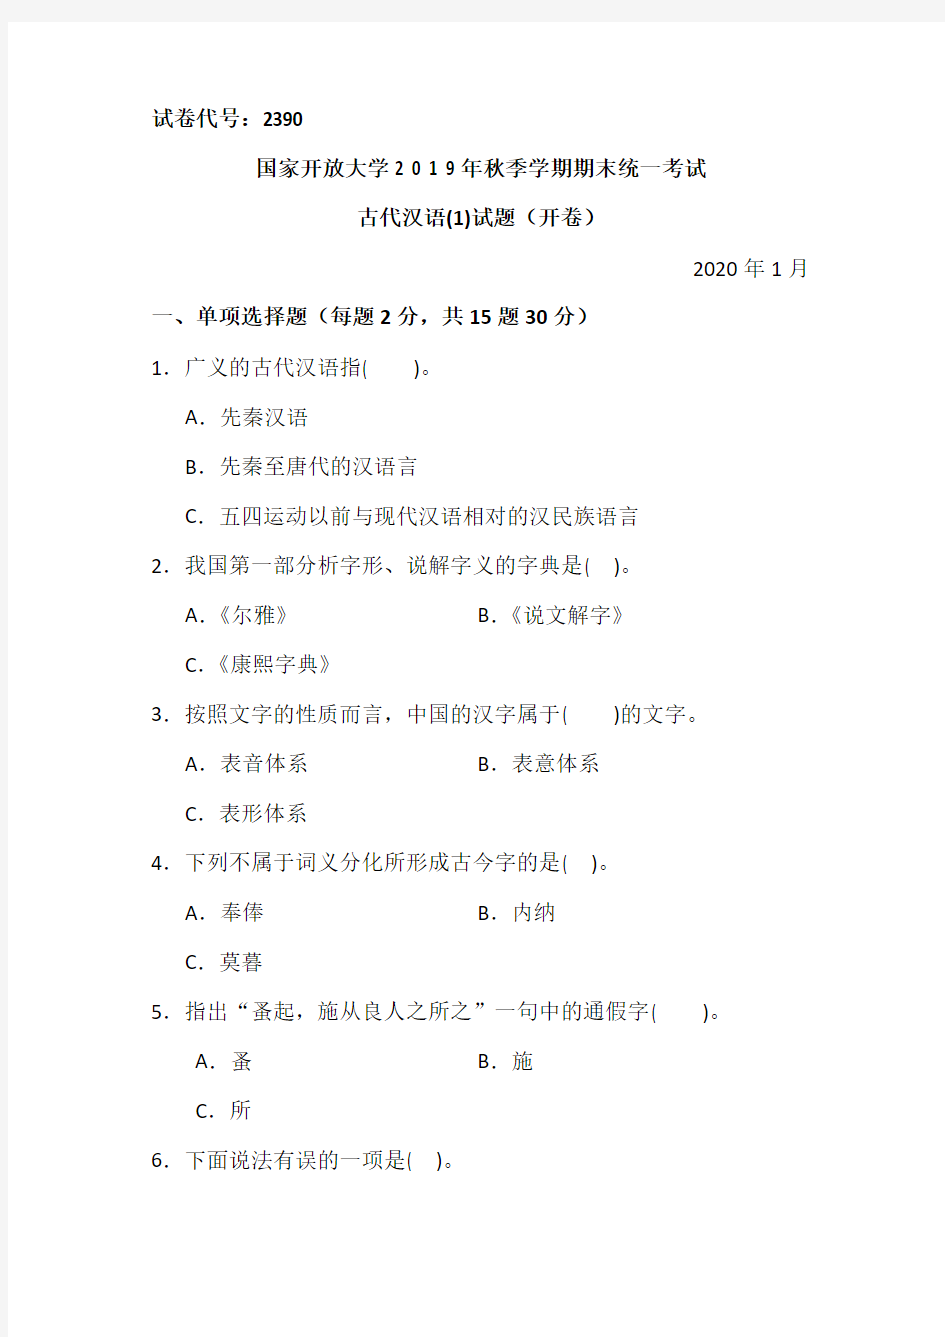 古代汉语(1)-2020.1国家开放大学2 0 1 9年秋季学期期末统一考试试题及答案